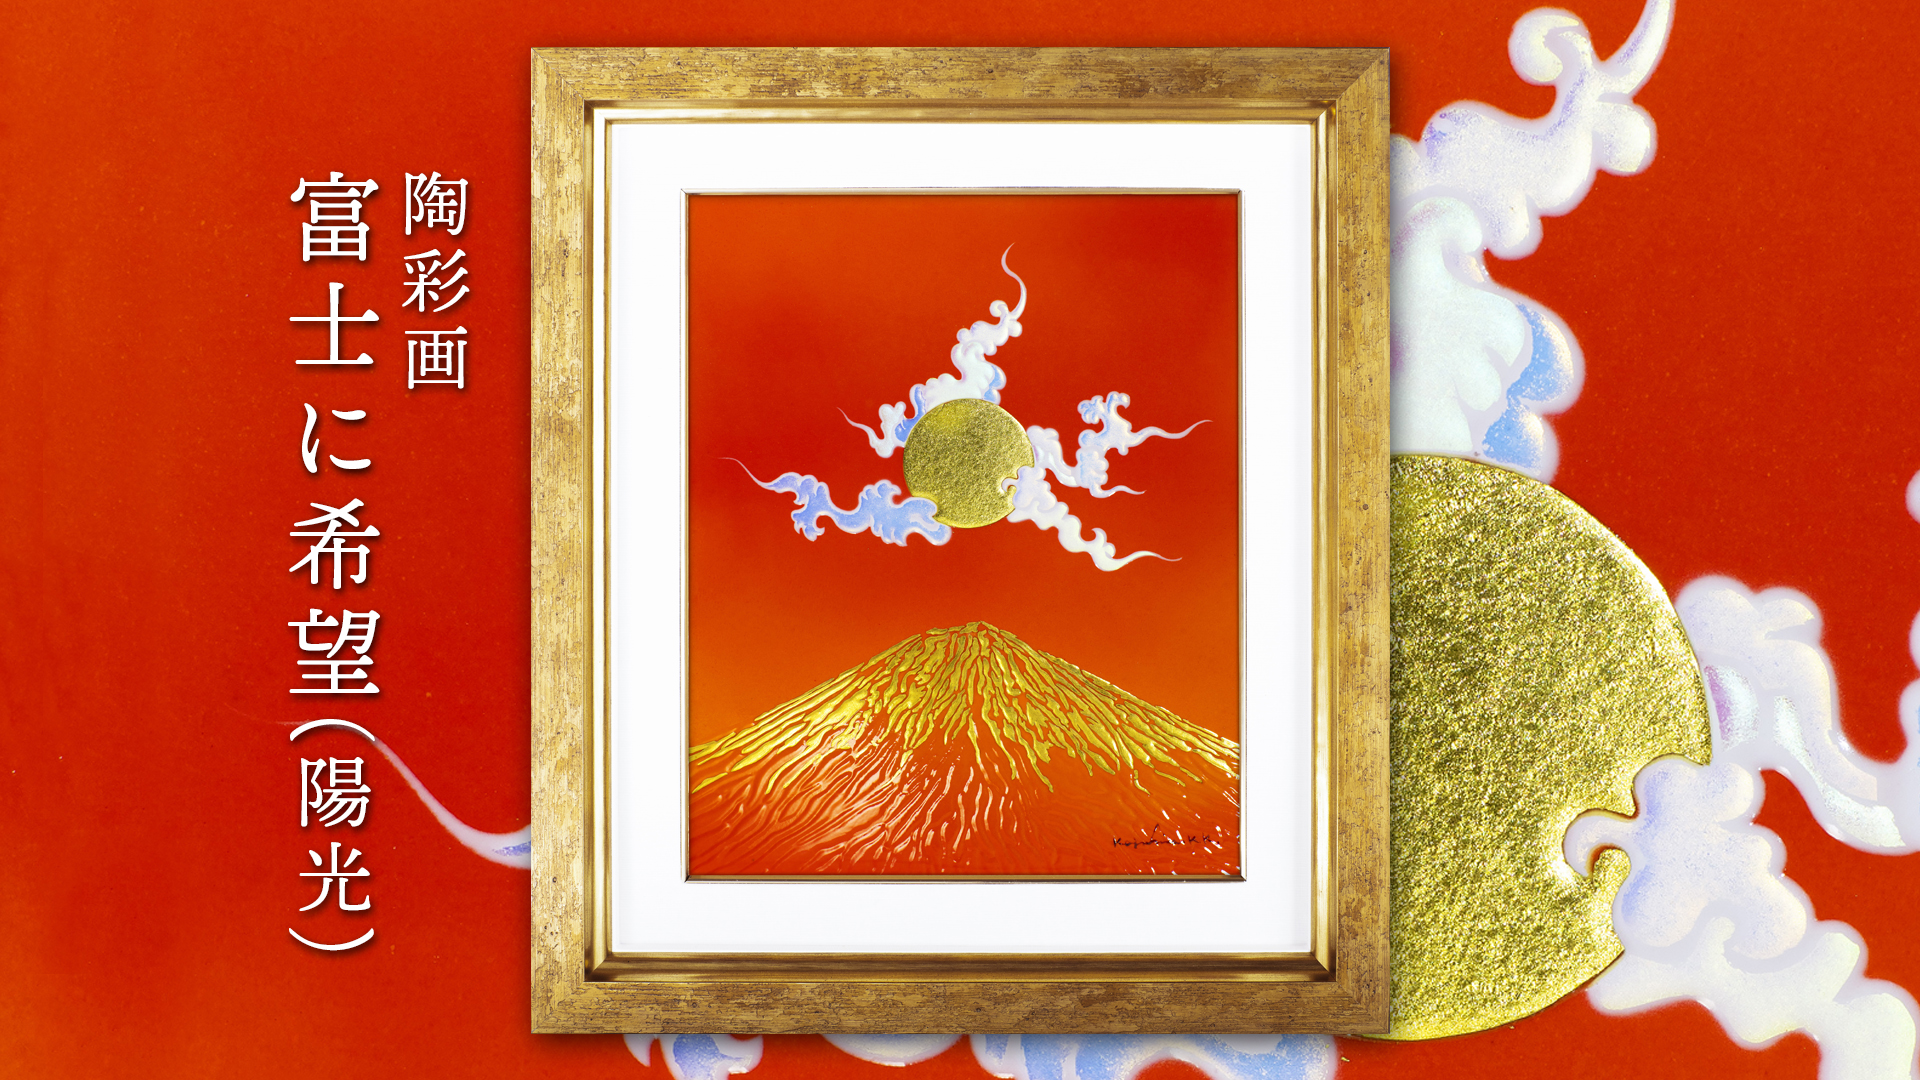 陶彩画 「富士に希望（陽光）」